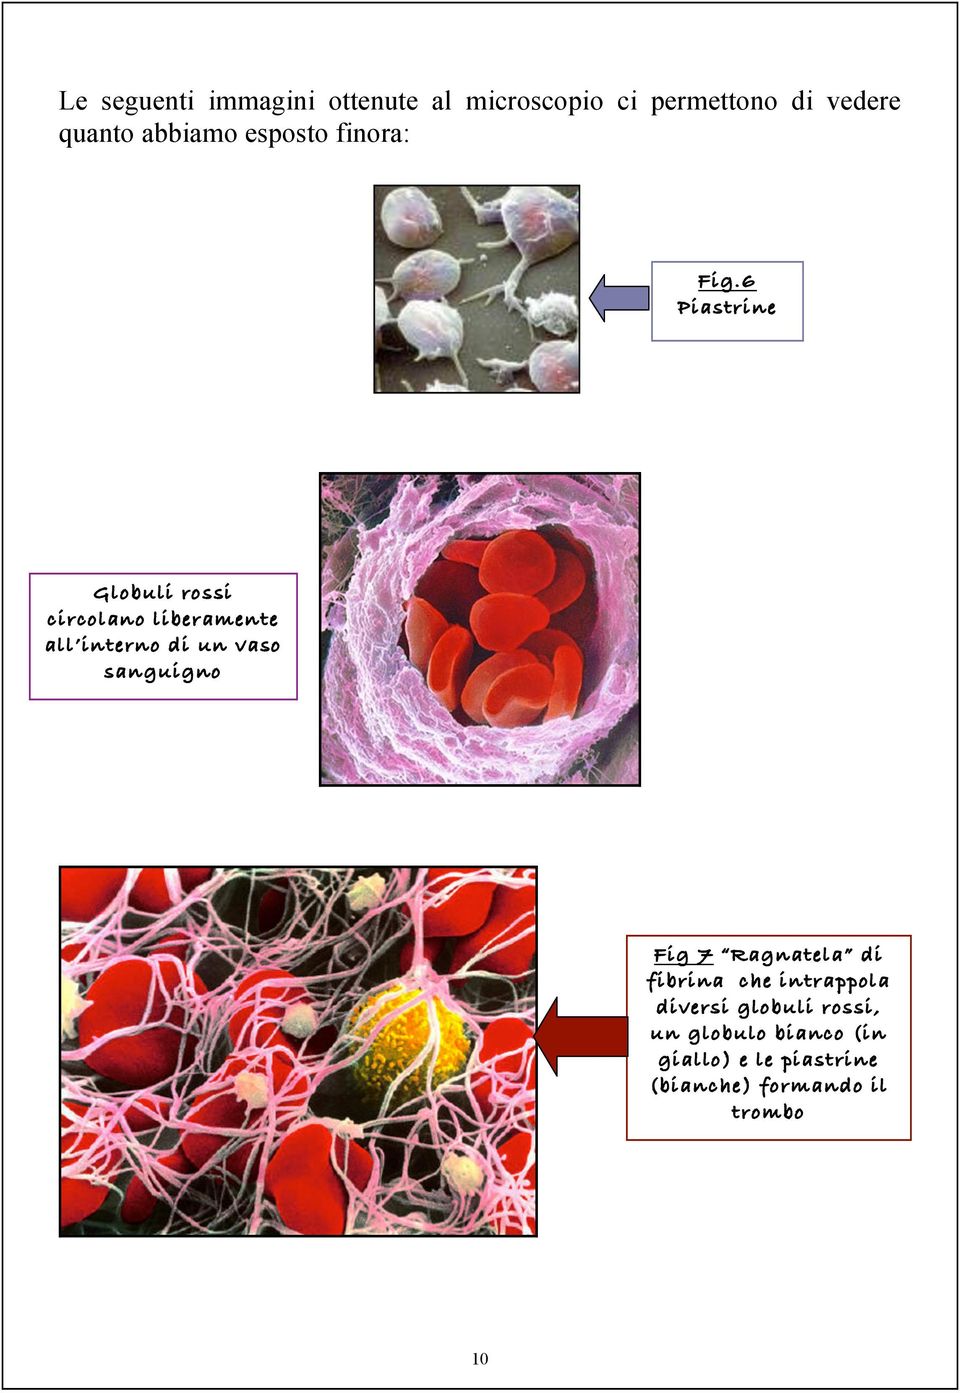 6 Piastrine Globuli rossi circolano liberamente all interno di un vaso sanguigno